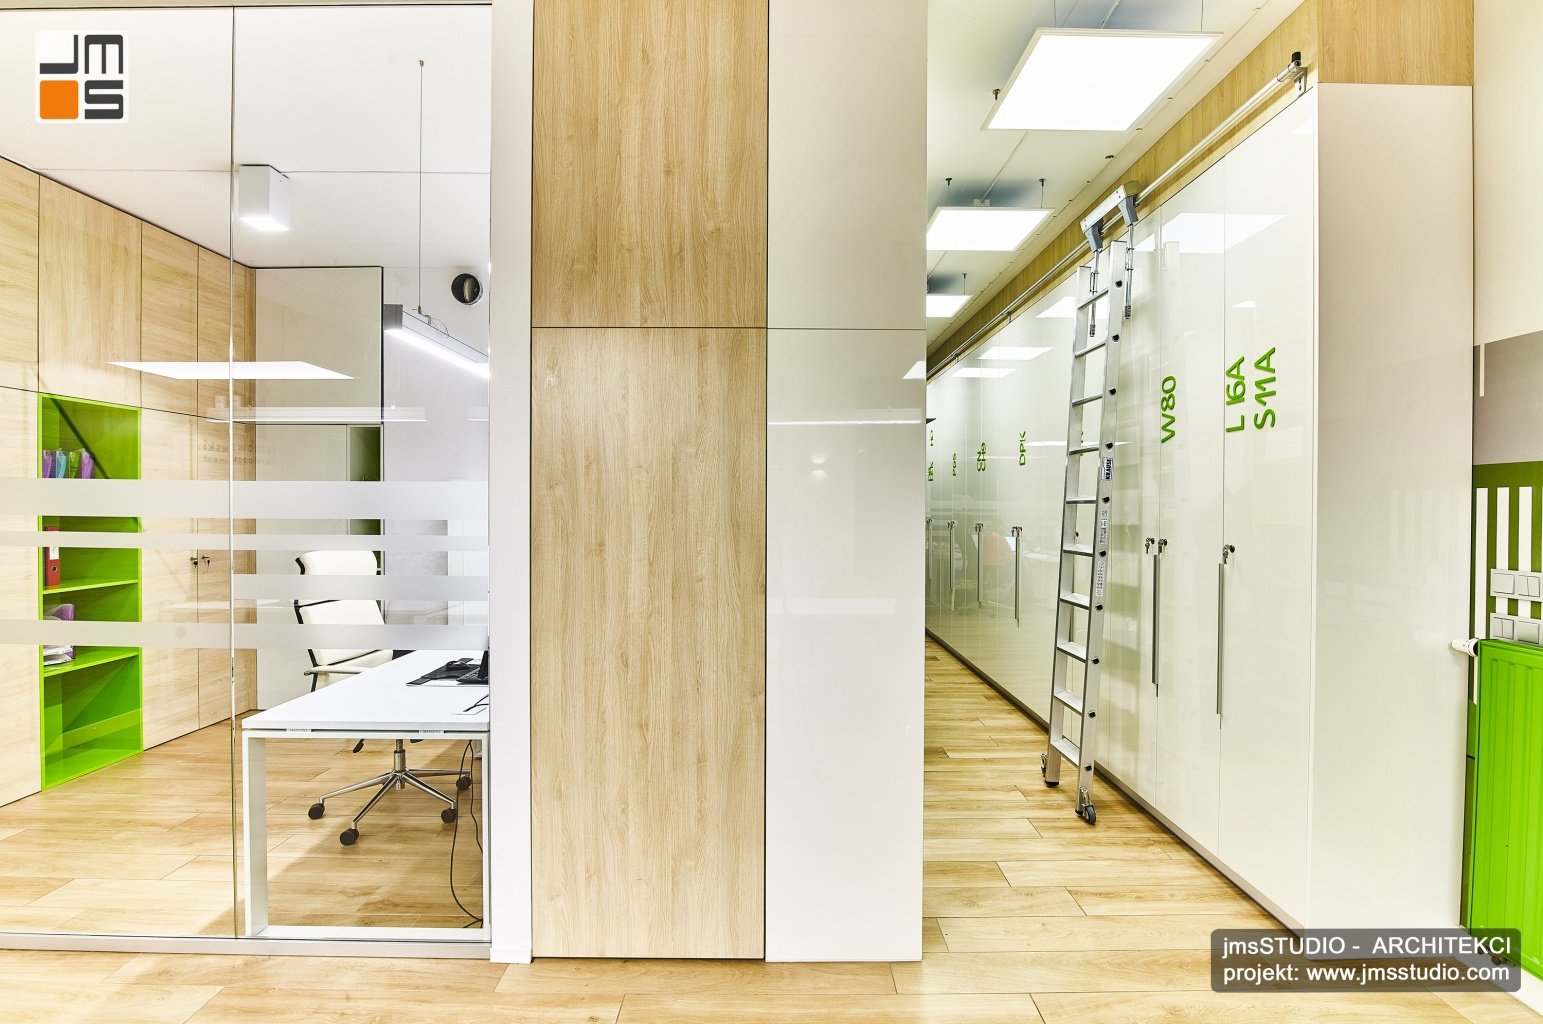 Projekt przestrzeni biurowej z wydzielonym archiwum ukrytym w zabudowanej szafie to oryginalny projekt wnętrz biura w Krakowie